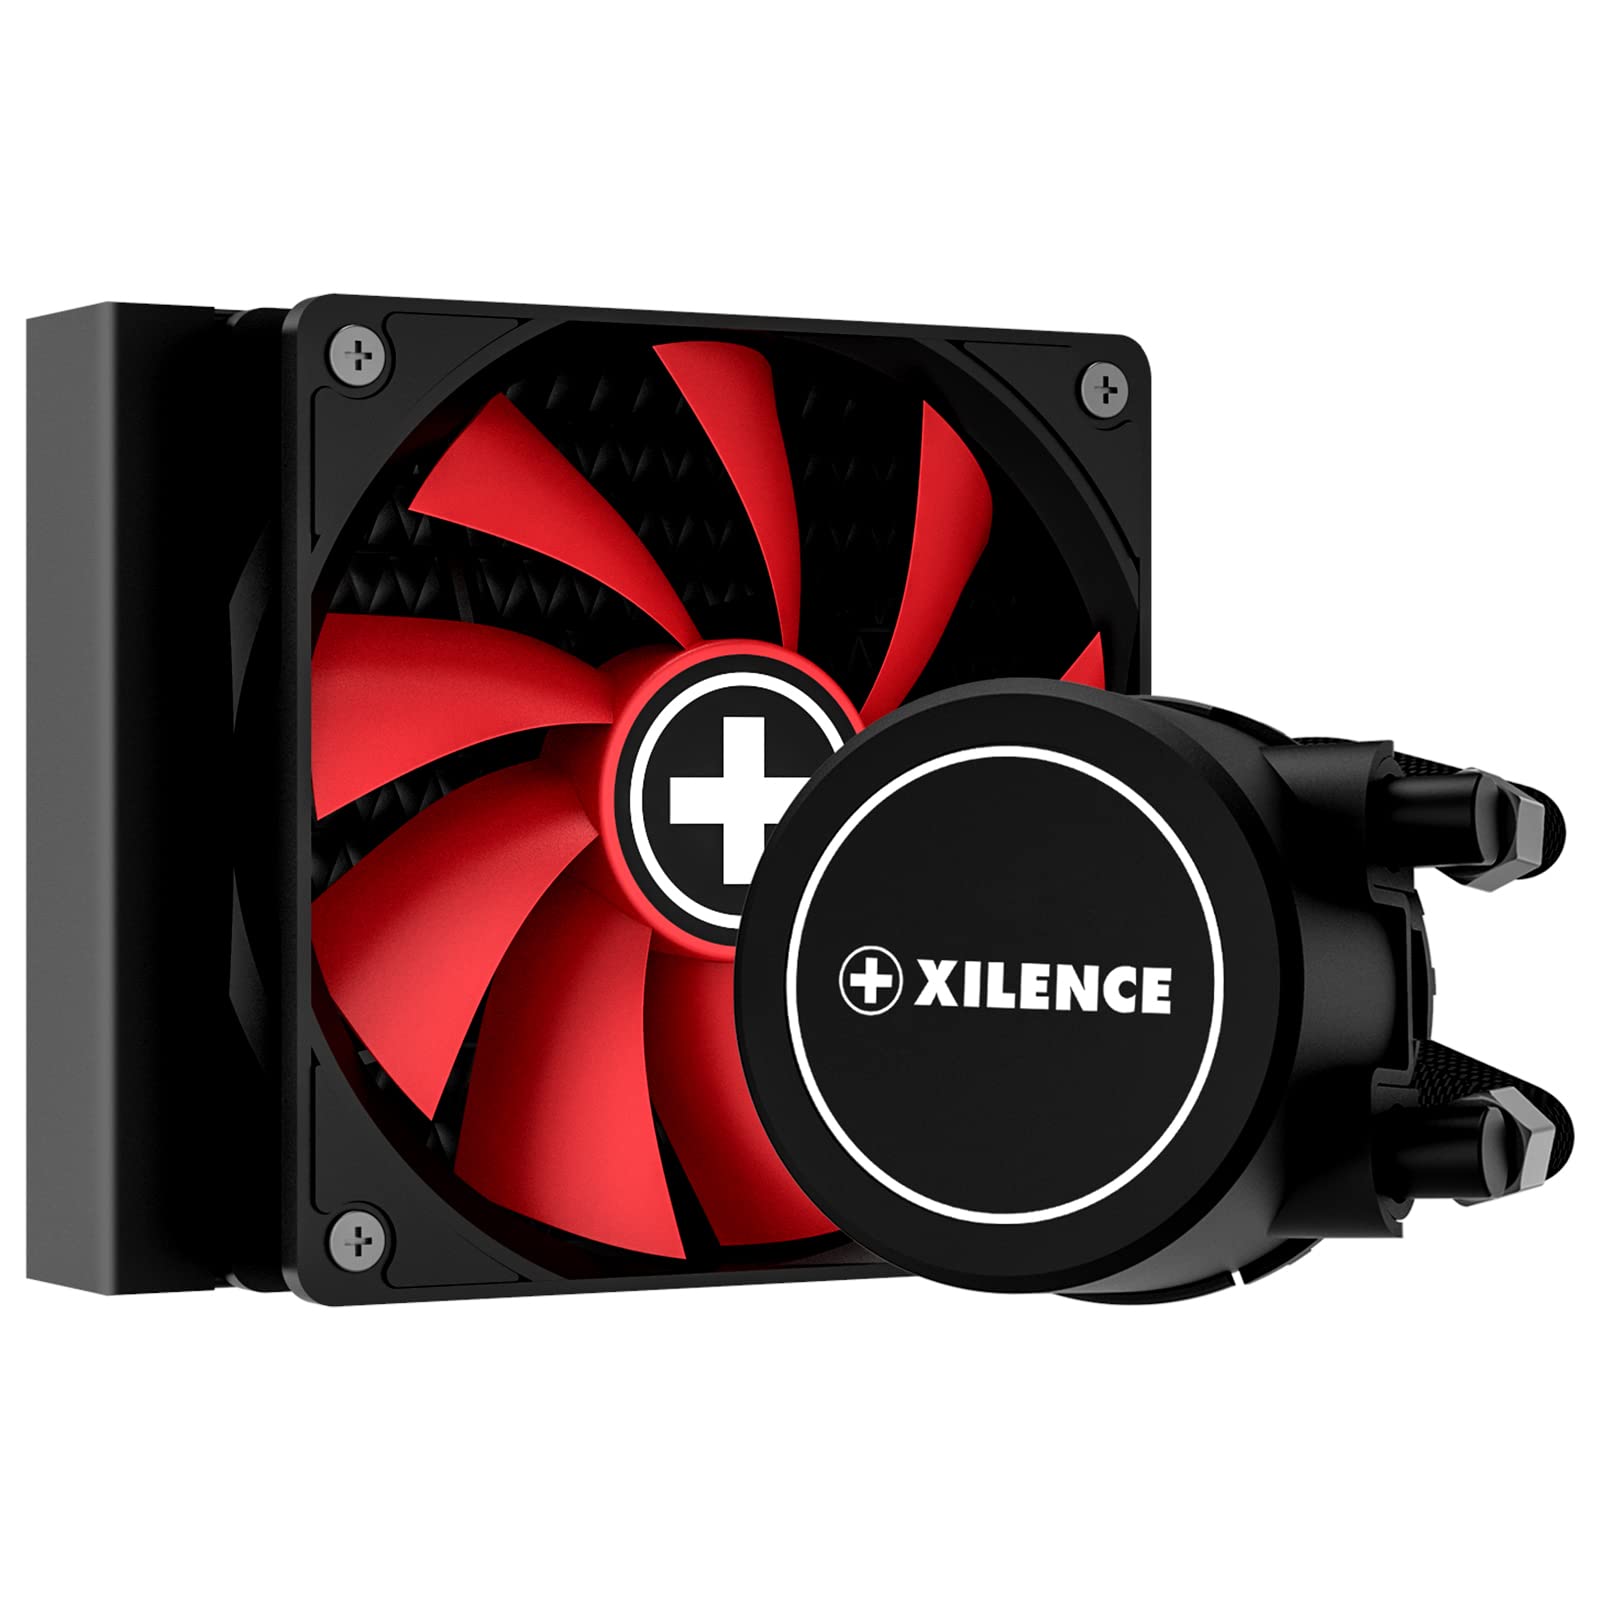 Xilence LQ120 AMD und Intel 120mm AiO Wasserkühlung, AM5/AM4, LGA 1700/2066/2011/1151/1150/1155/1156/1200, 200W TDP, 120mm PWM Lüfter, optimal für hohe Kühlanforderungen im Gaming/Streaming, schwarz